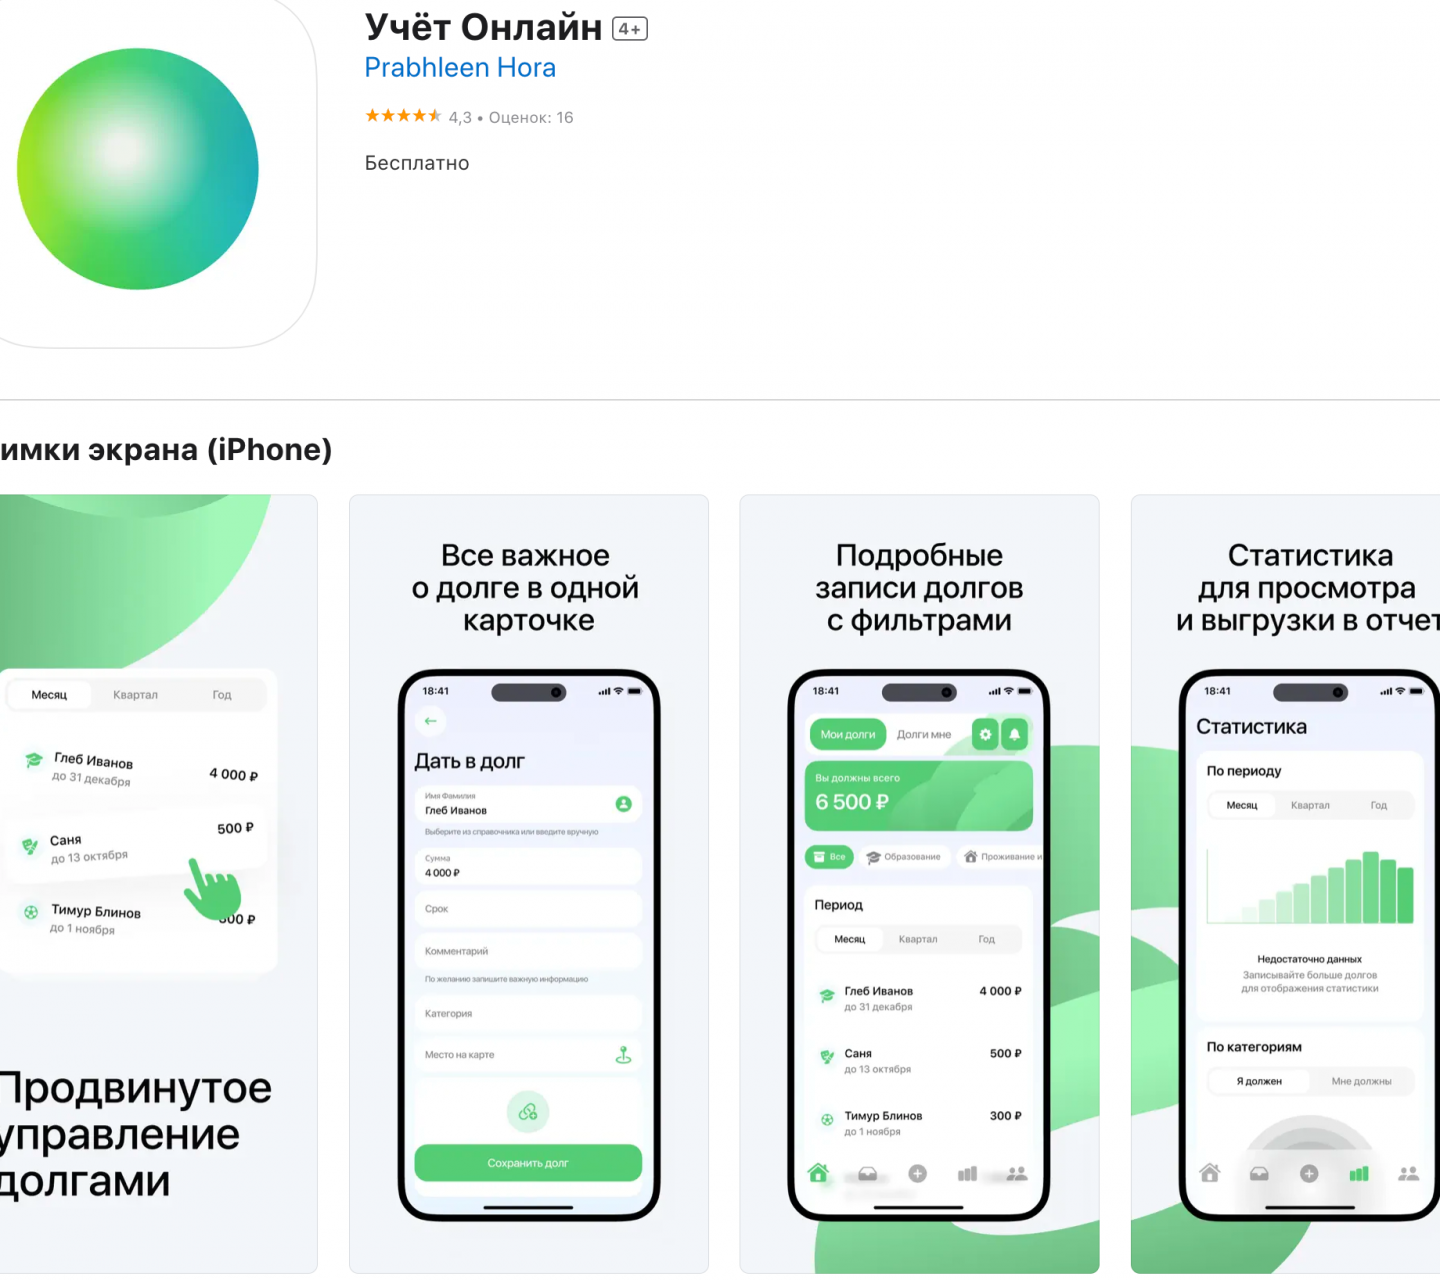 Сбербанк выпустил новое мобильное приложение для iOS